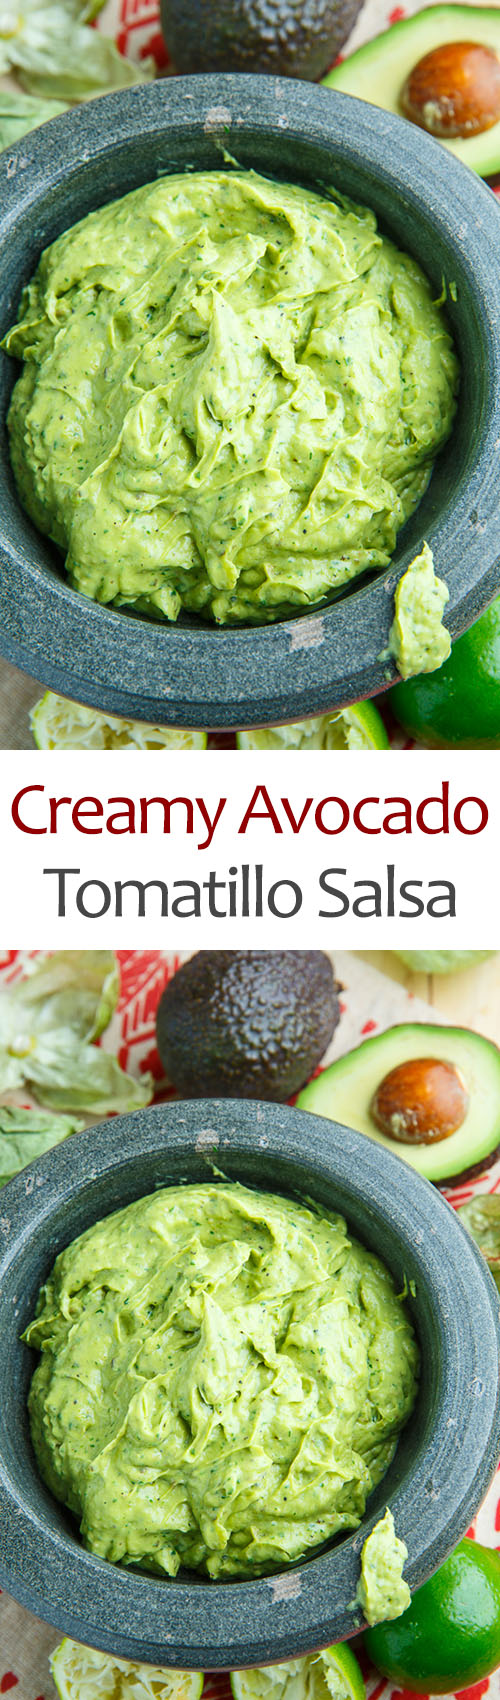 Creamy Avocado and Tomatillo Salsa